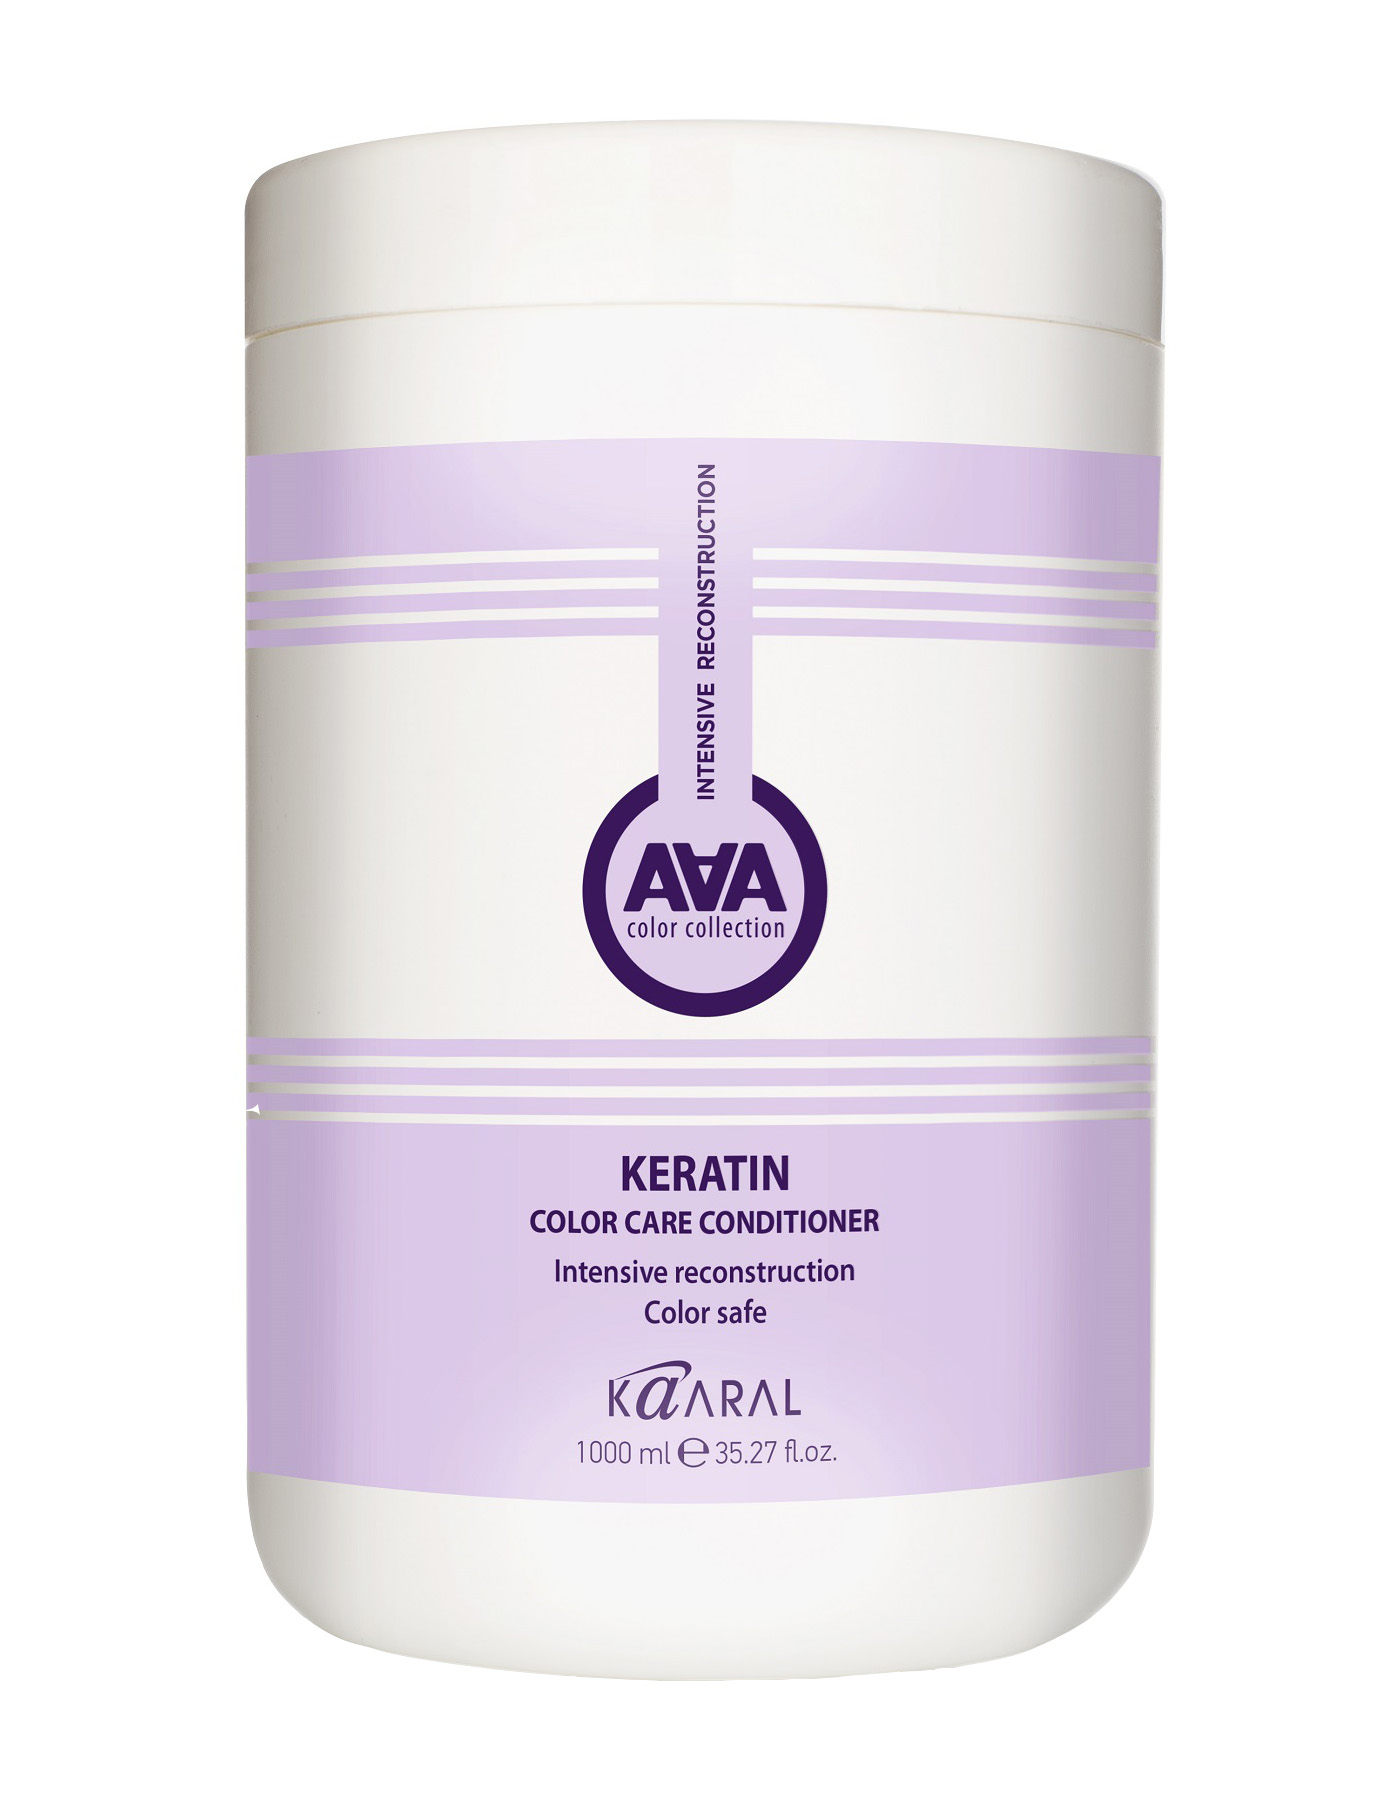 Kaaral Кератиновый кондиционер для восстановления окрашенных и химически обработанных волос, 1000 мл (Kaaral, AAA) кондиционер для восстановления окрашенных и химически обработанных волос кератиновый aaa keratin color care